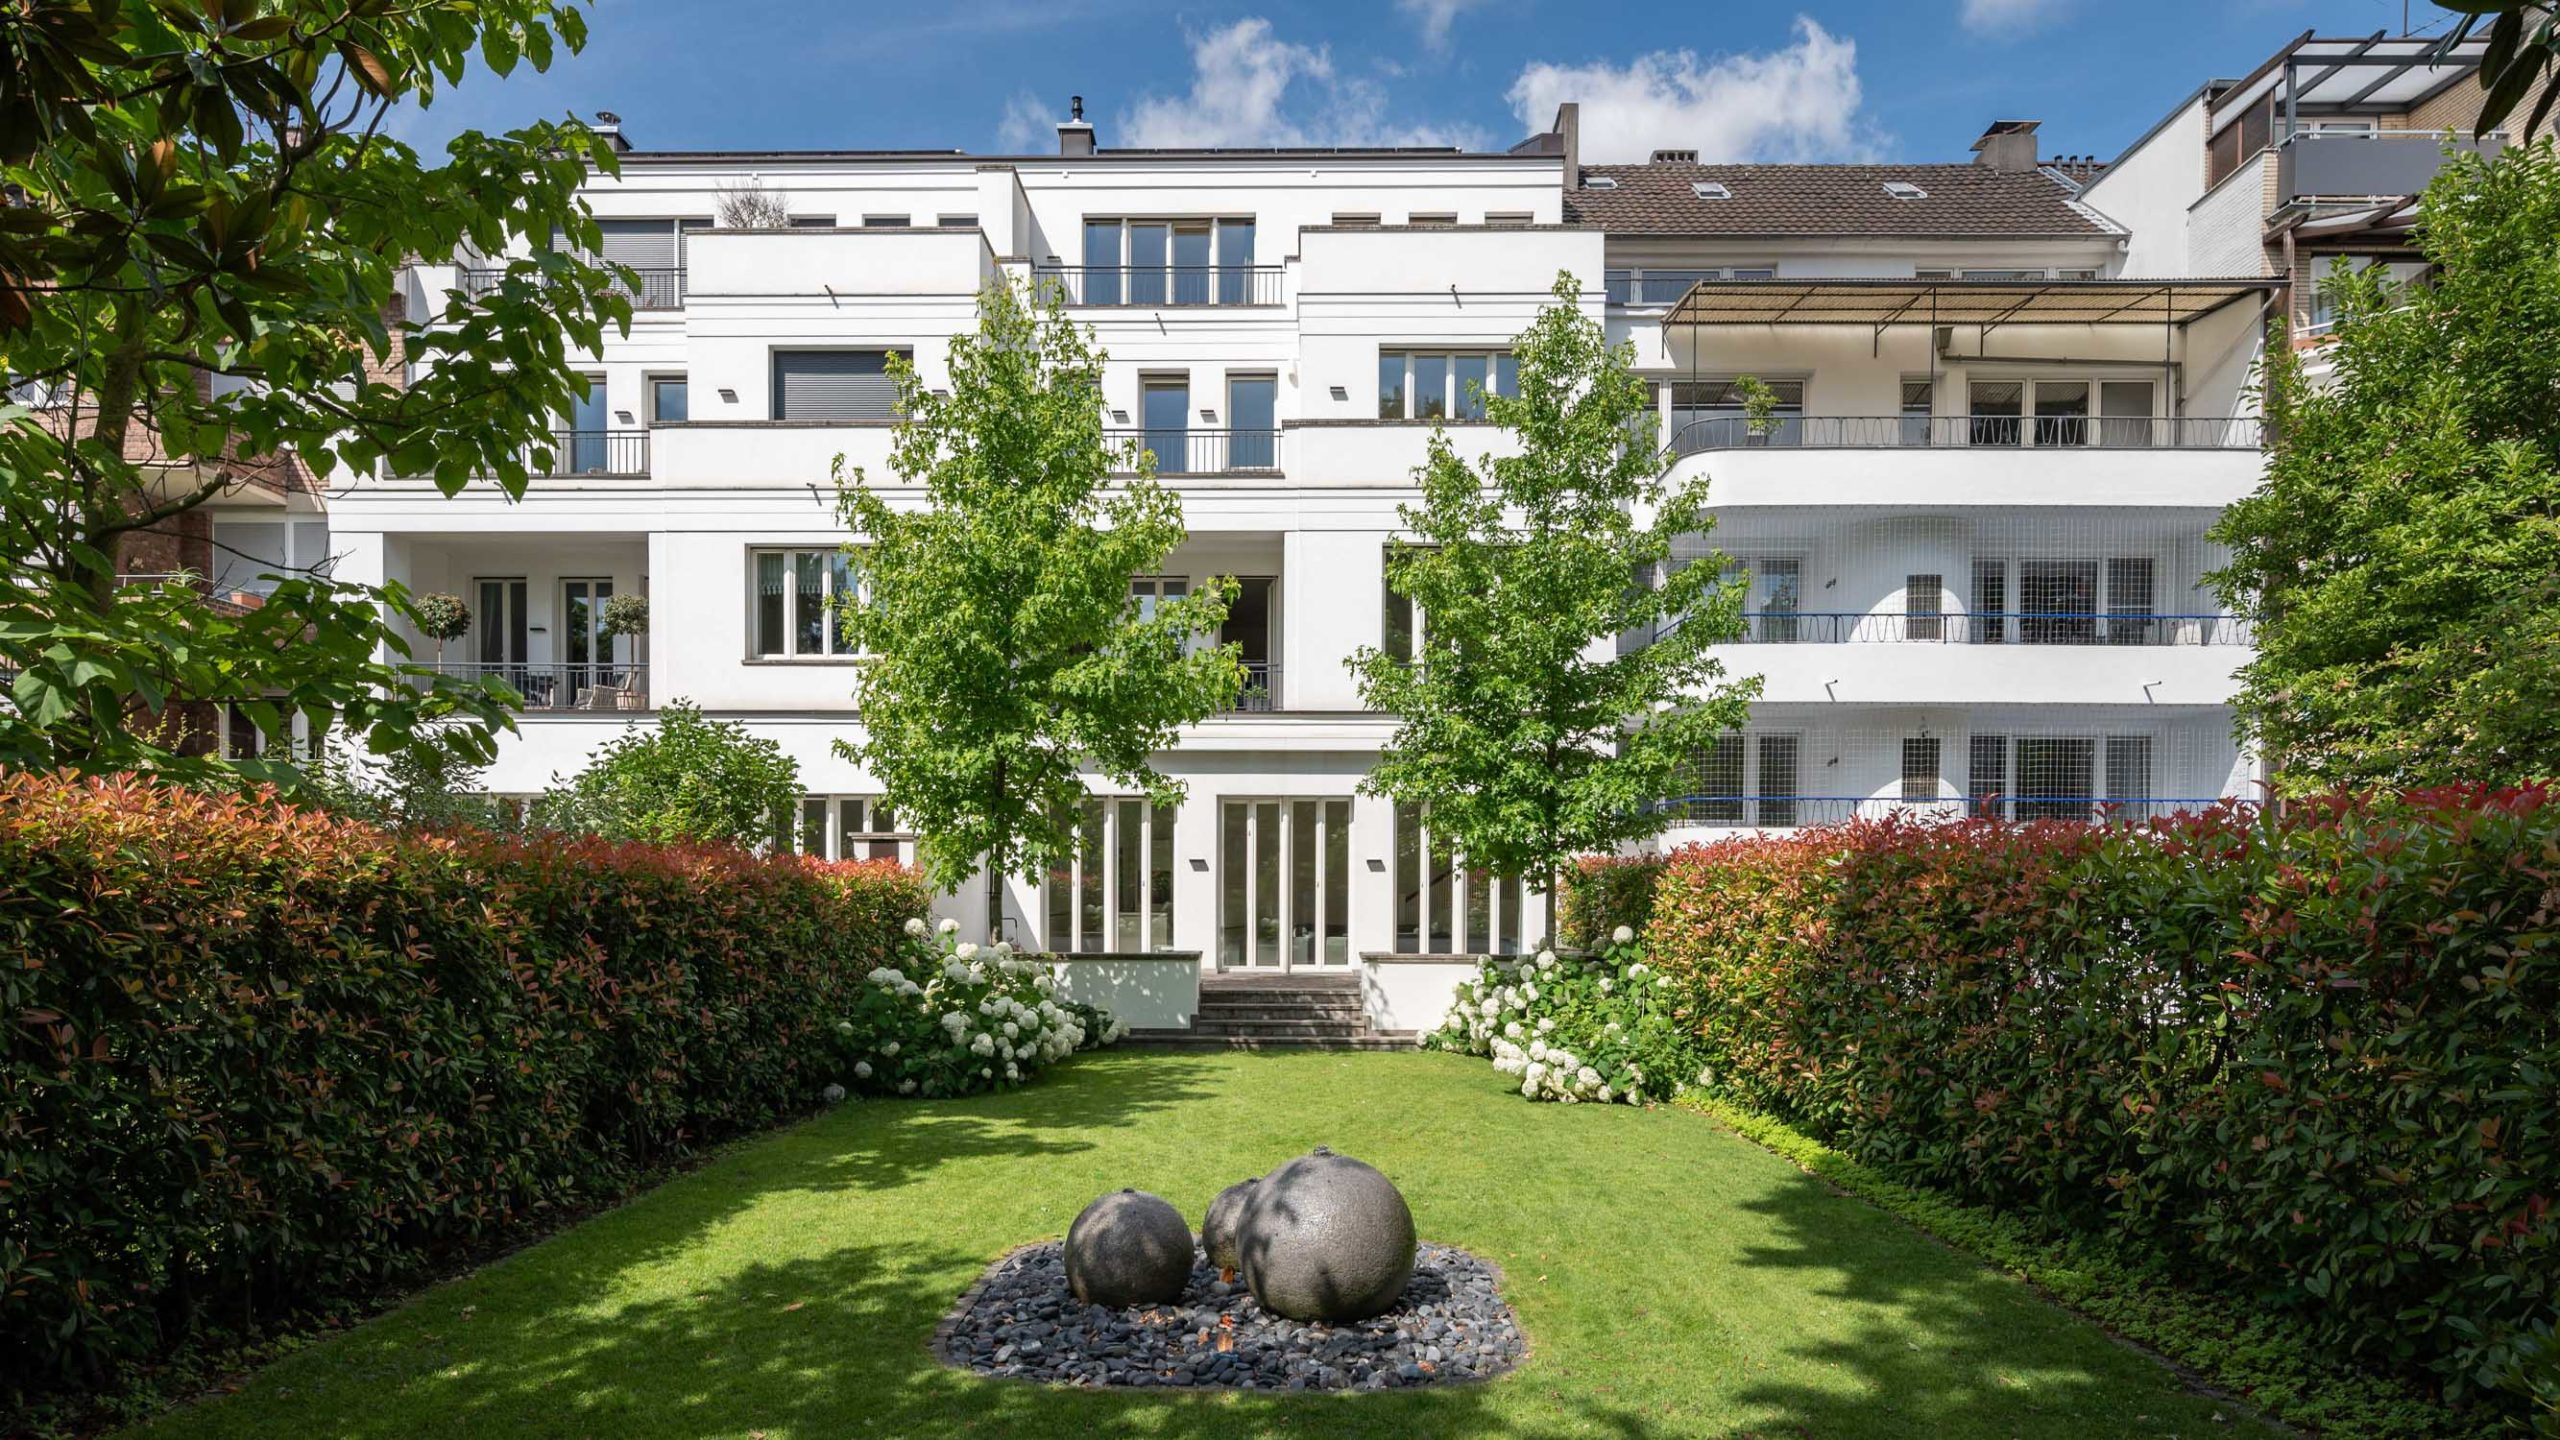 ImmobilienfotografieArchitekturfotografie eines Stadthauses in Oberkassel, Düsseldorf. Viele Bäume und Wiesen. Preise Immobilienfotograf